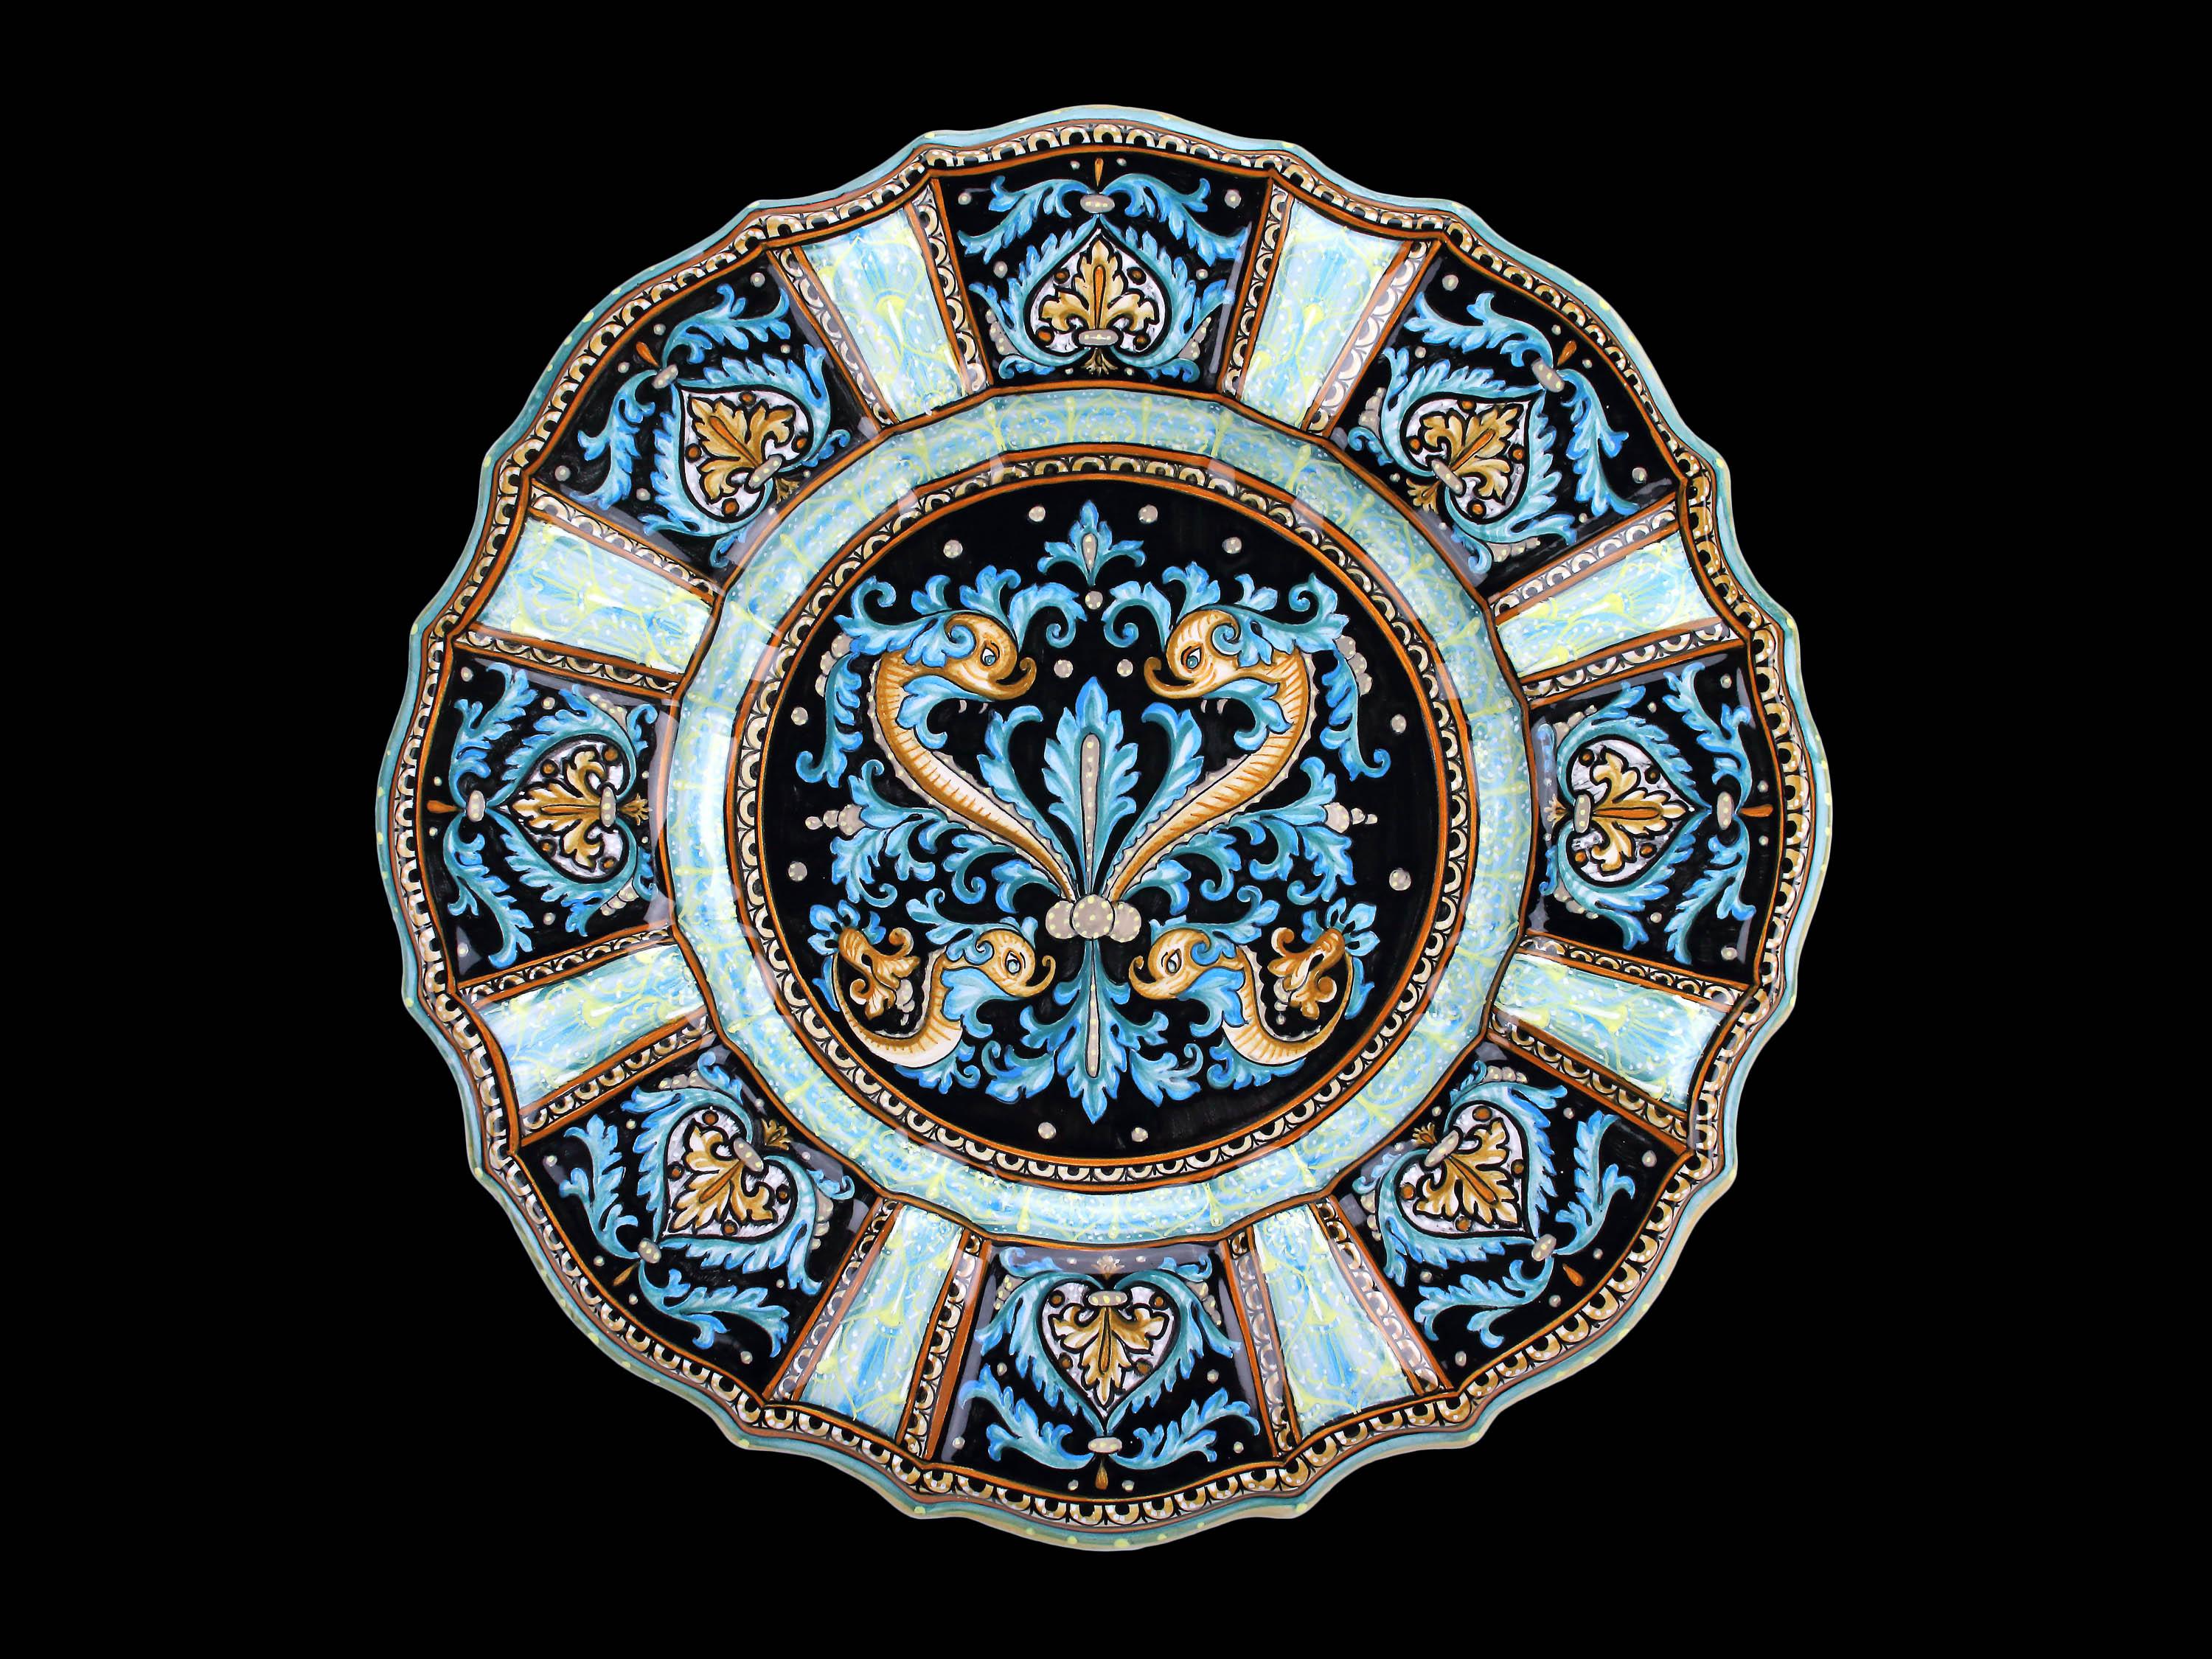 Plat en majolique fabriqué et peint à la main à Deruta, en Italie, selon la technique de peinture originale de la Renaissance. Le plat est enrichi par la présence de quatre figures de dauphins métamorphiques disposées symétriquement ; dans